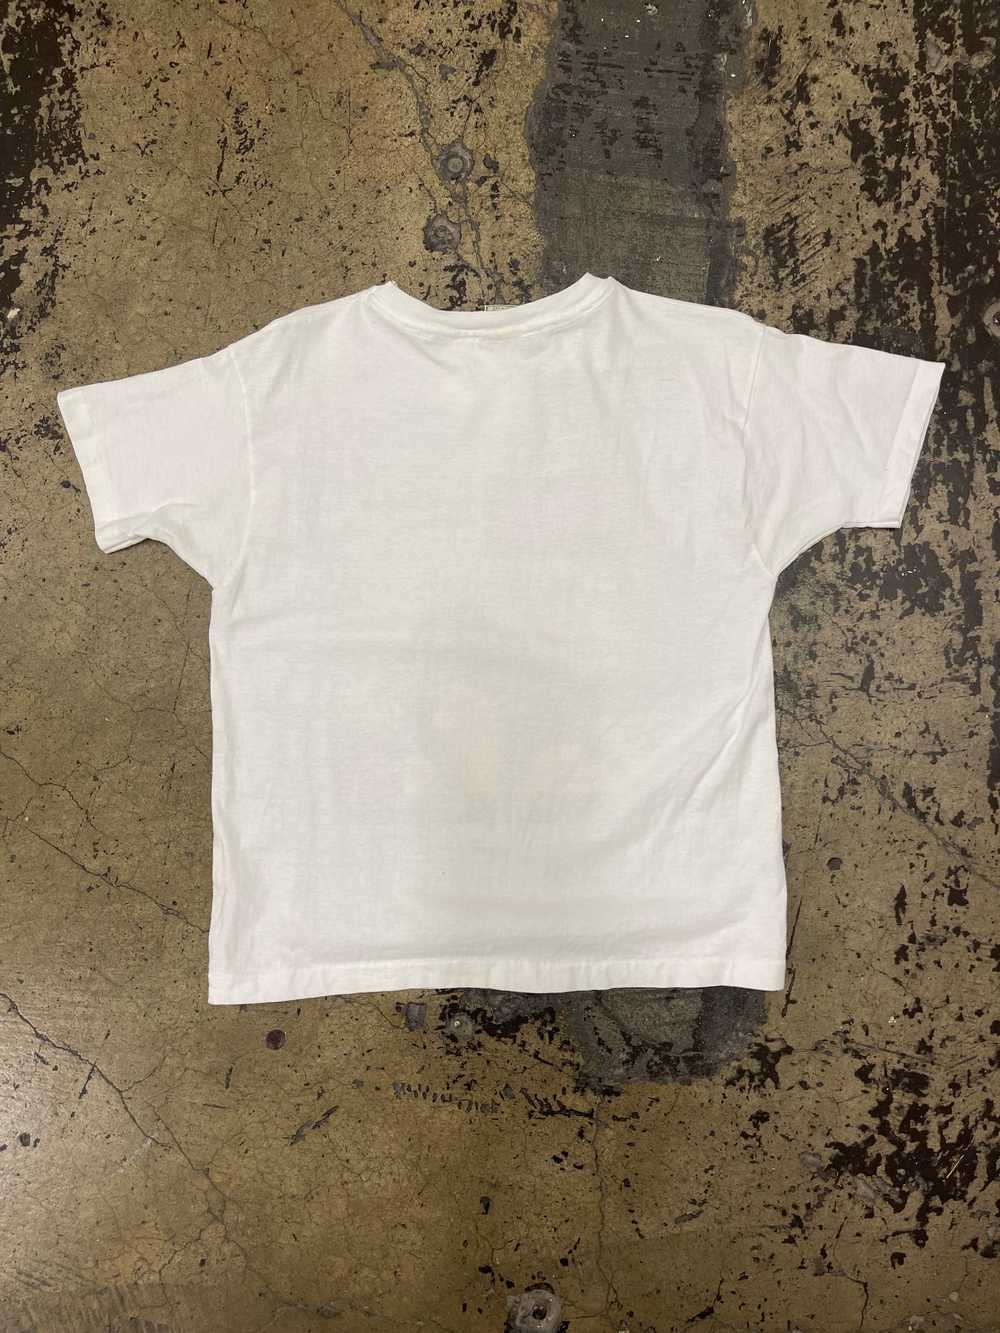 Vintage 1990’s Levi’s T-Shirt - image 2